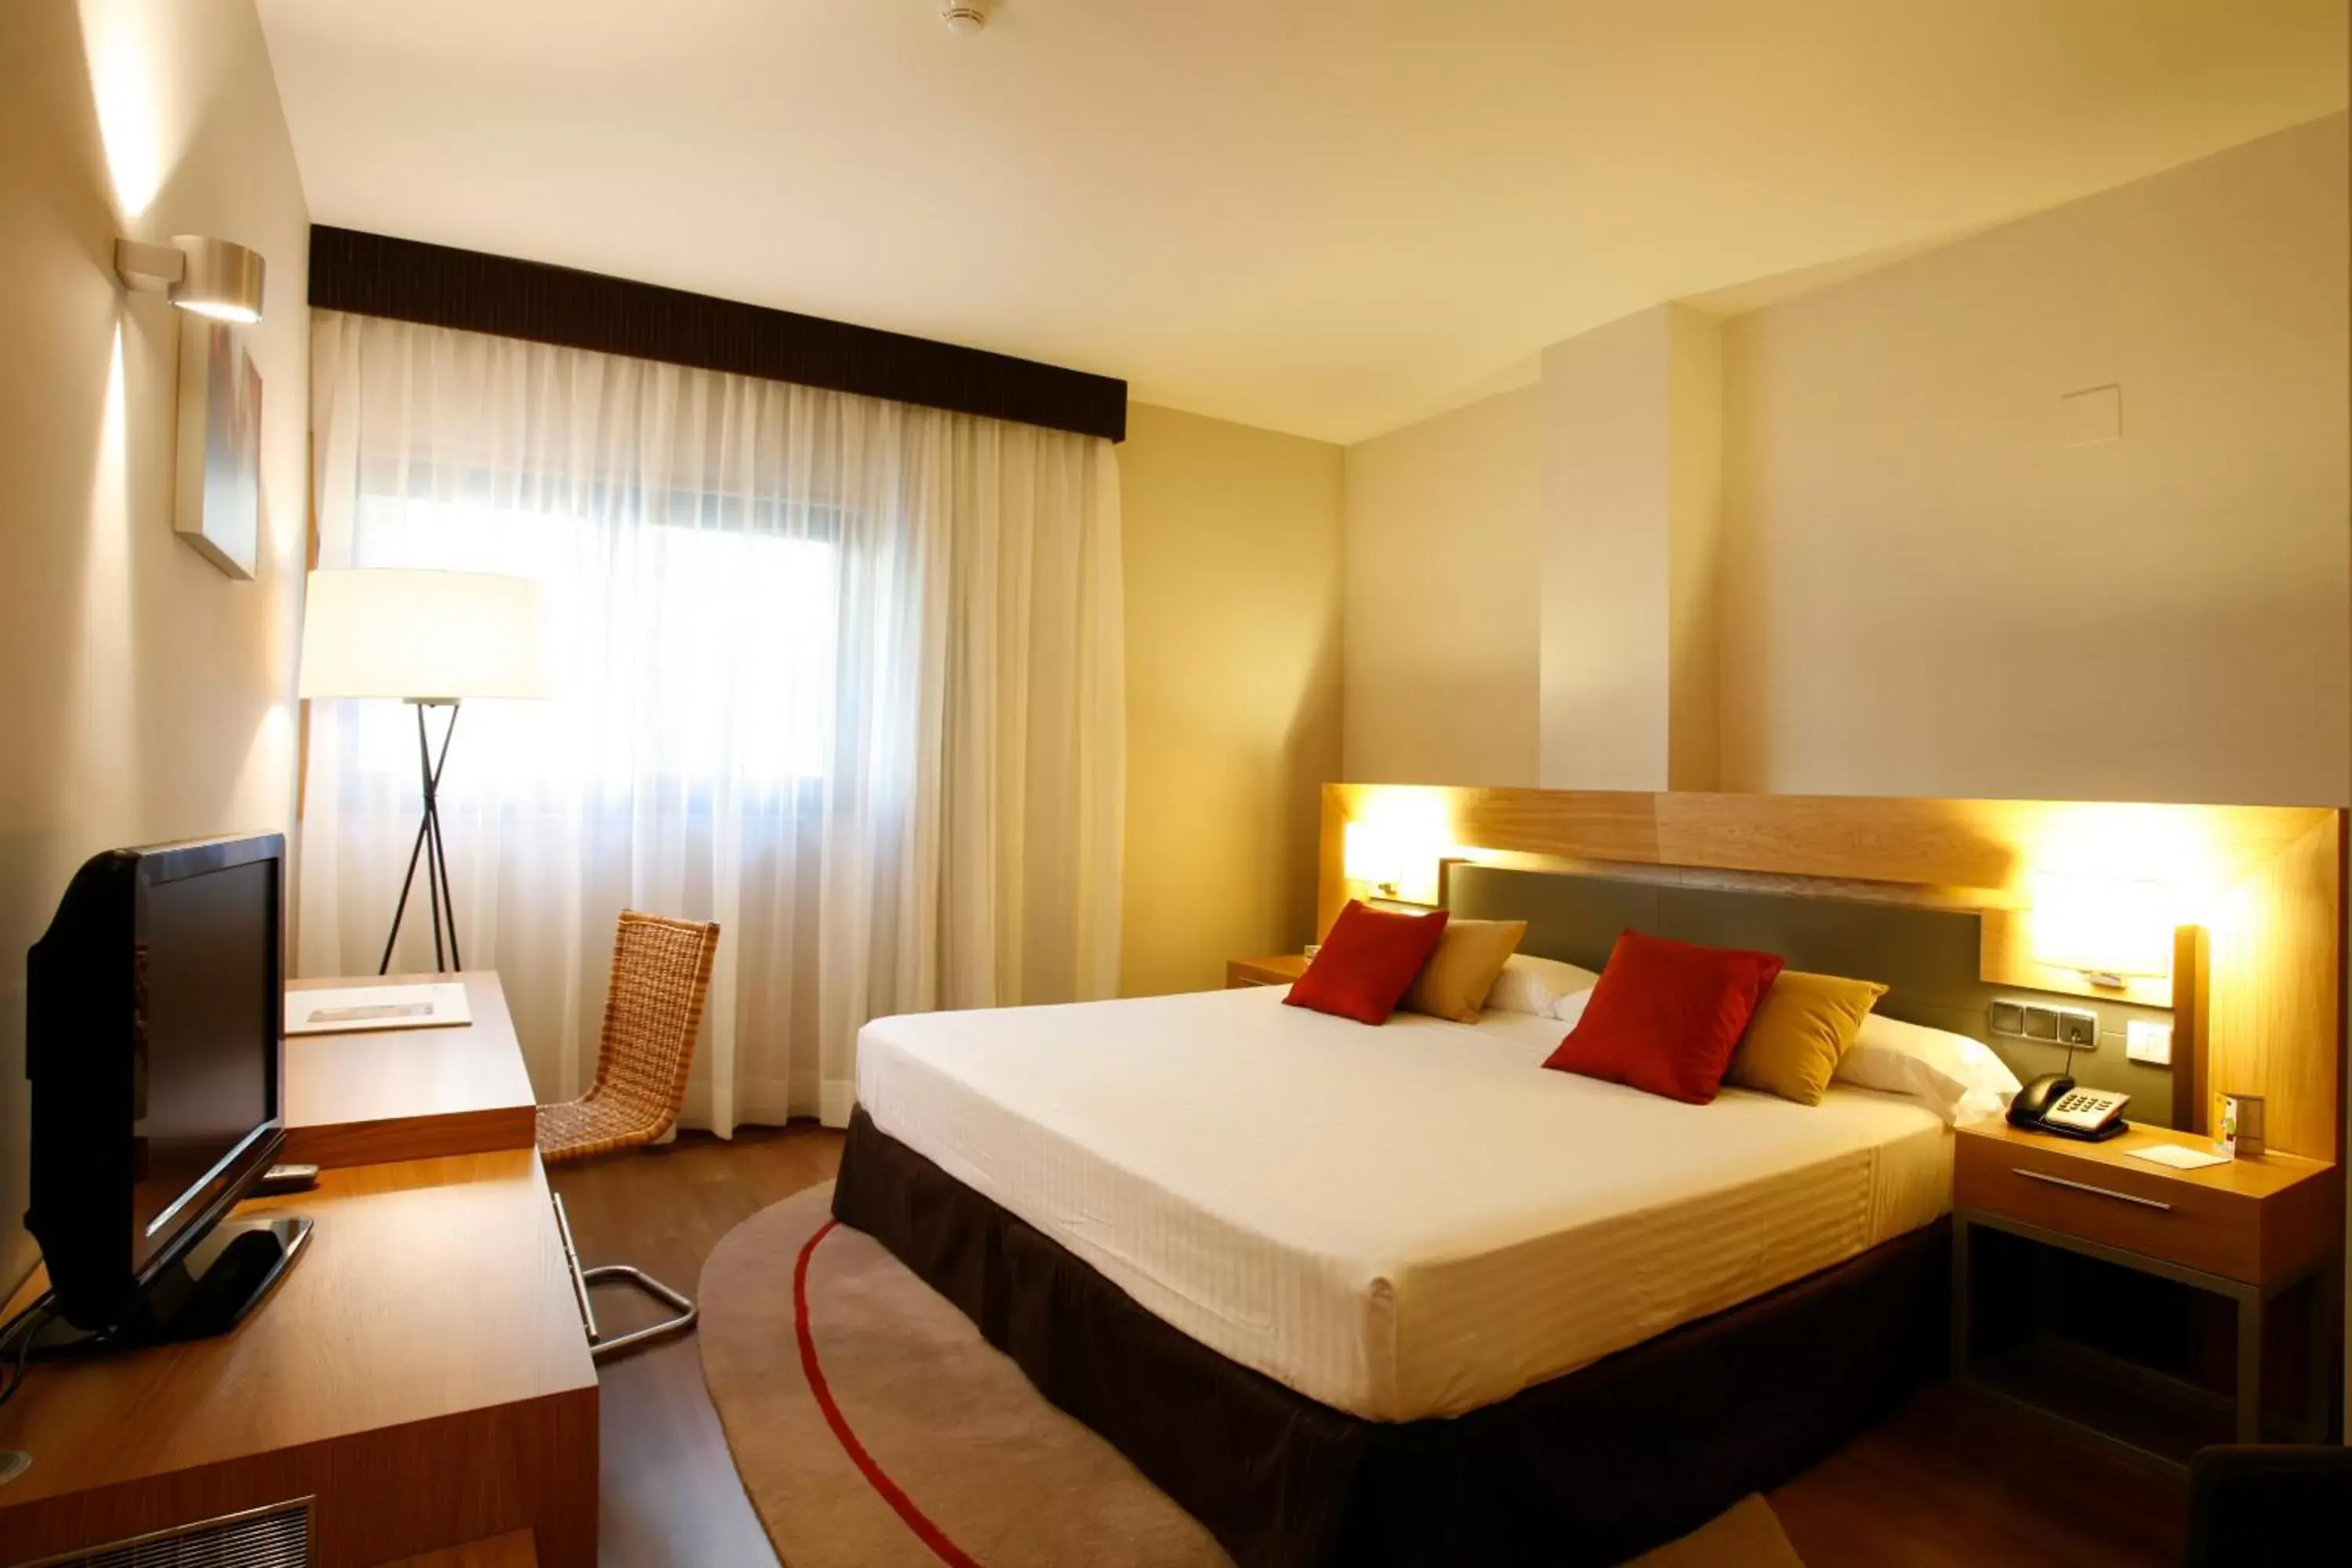 Bedroom, Room Photo in Hotel Guadalmedina